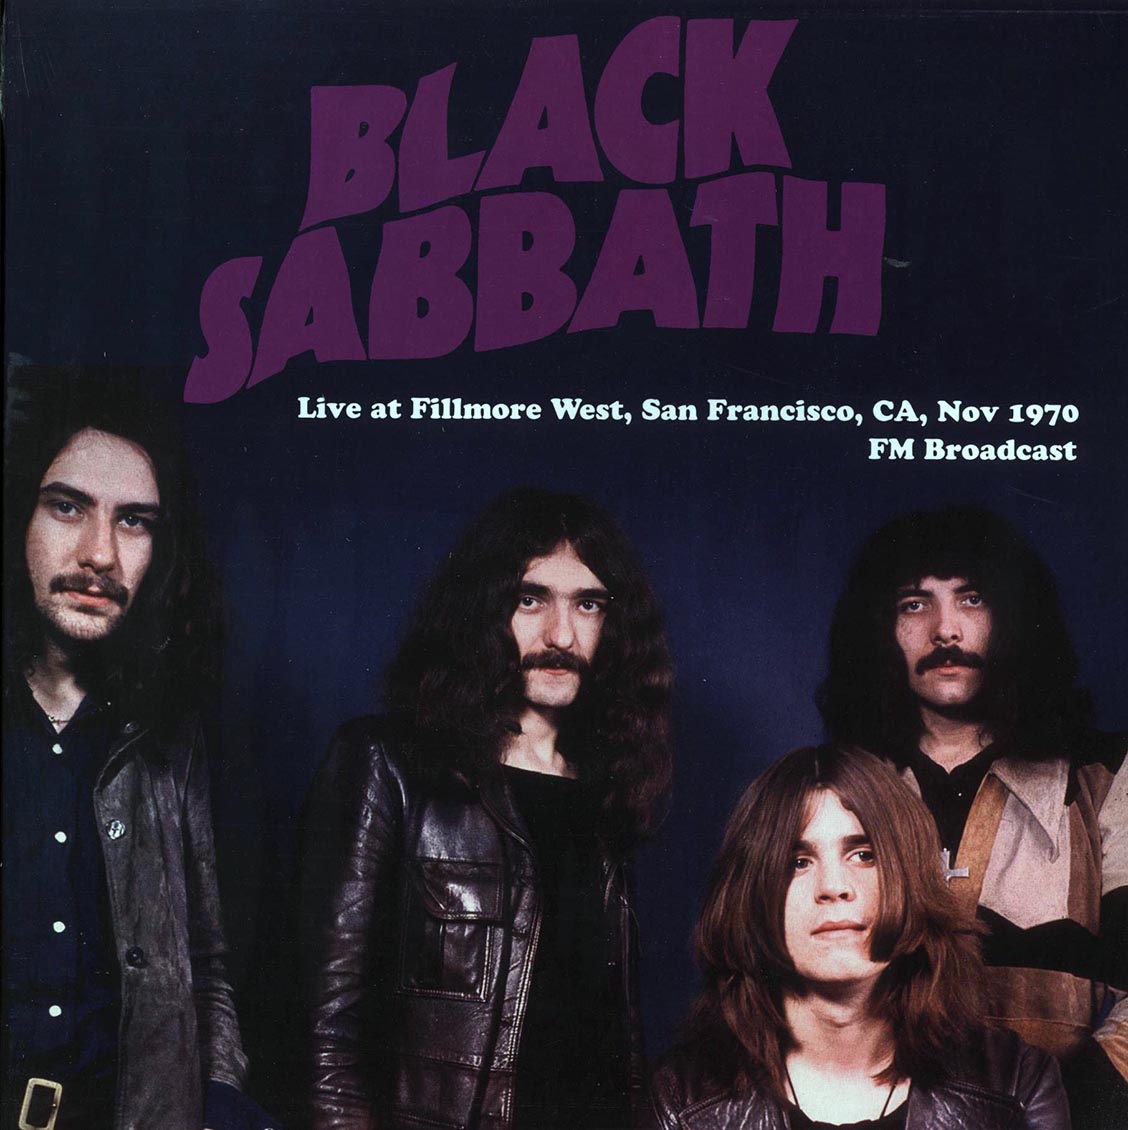 Black Sabbath - Live At Fillmore West, San Francisco, CA, Nov 1970 FM Broadcast - Vinyl LP